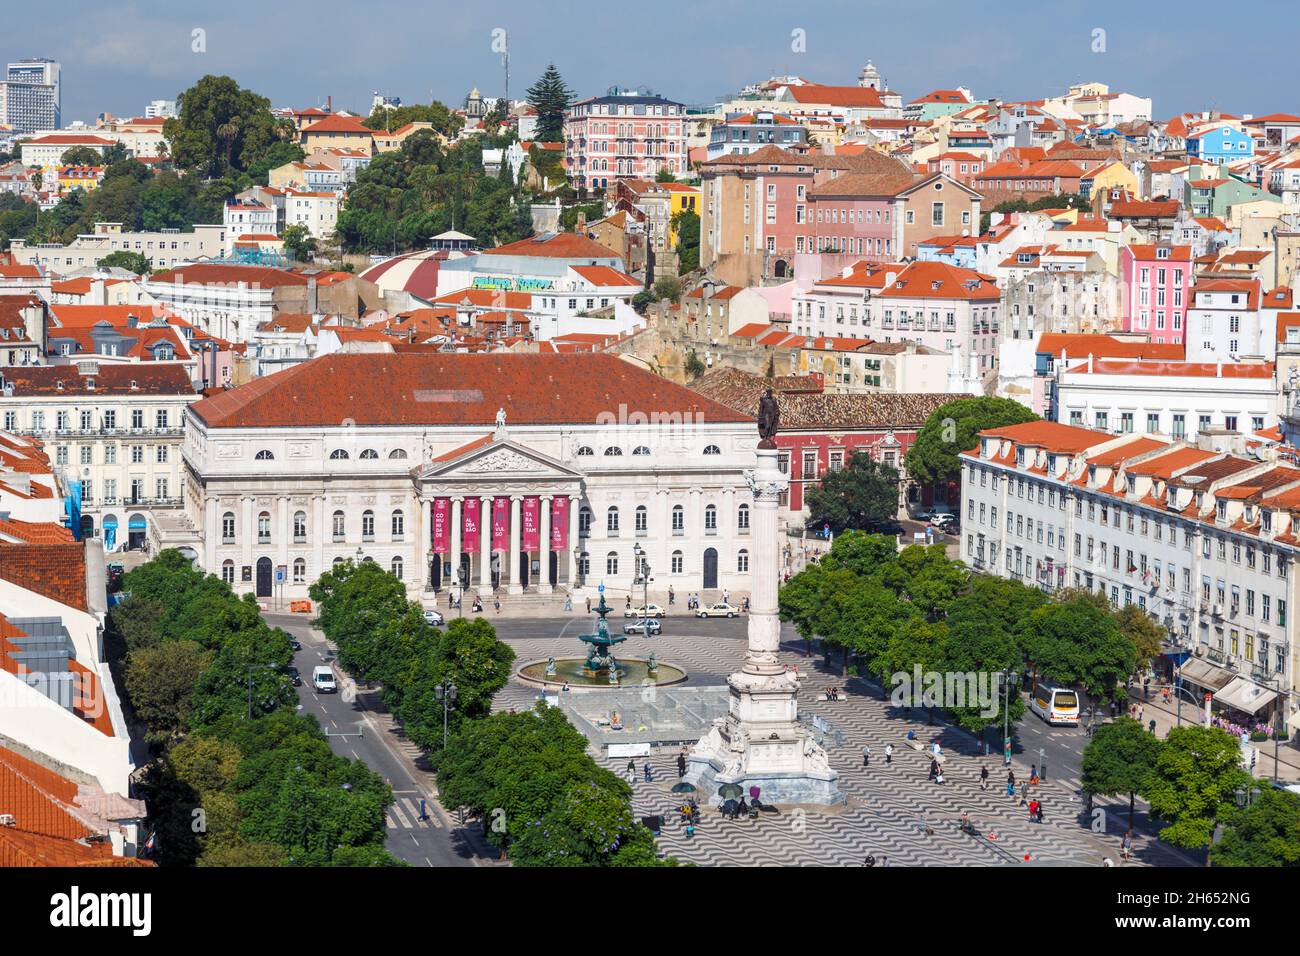 Lisbona, Portogallo. Praca Dom Pedro IV, comunemente noto come Rossio. L'edificio bianco è il Teatro Nazionale, il Teatro Nacional Dona Maria II Il colum Foto Stock